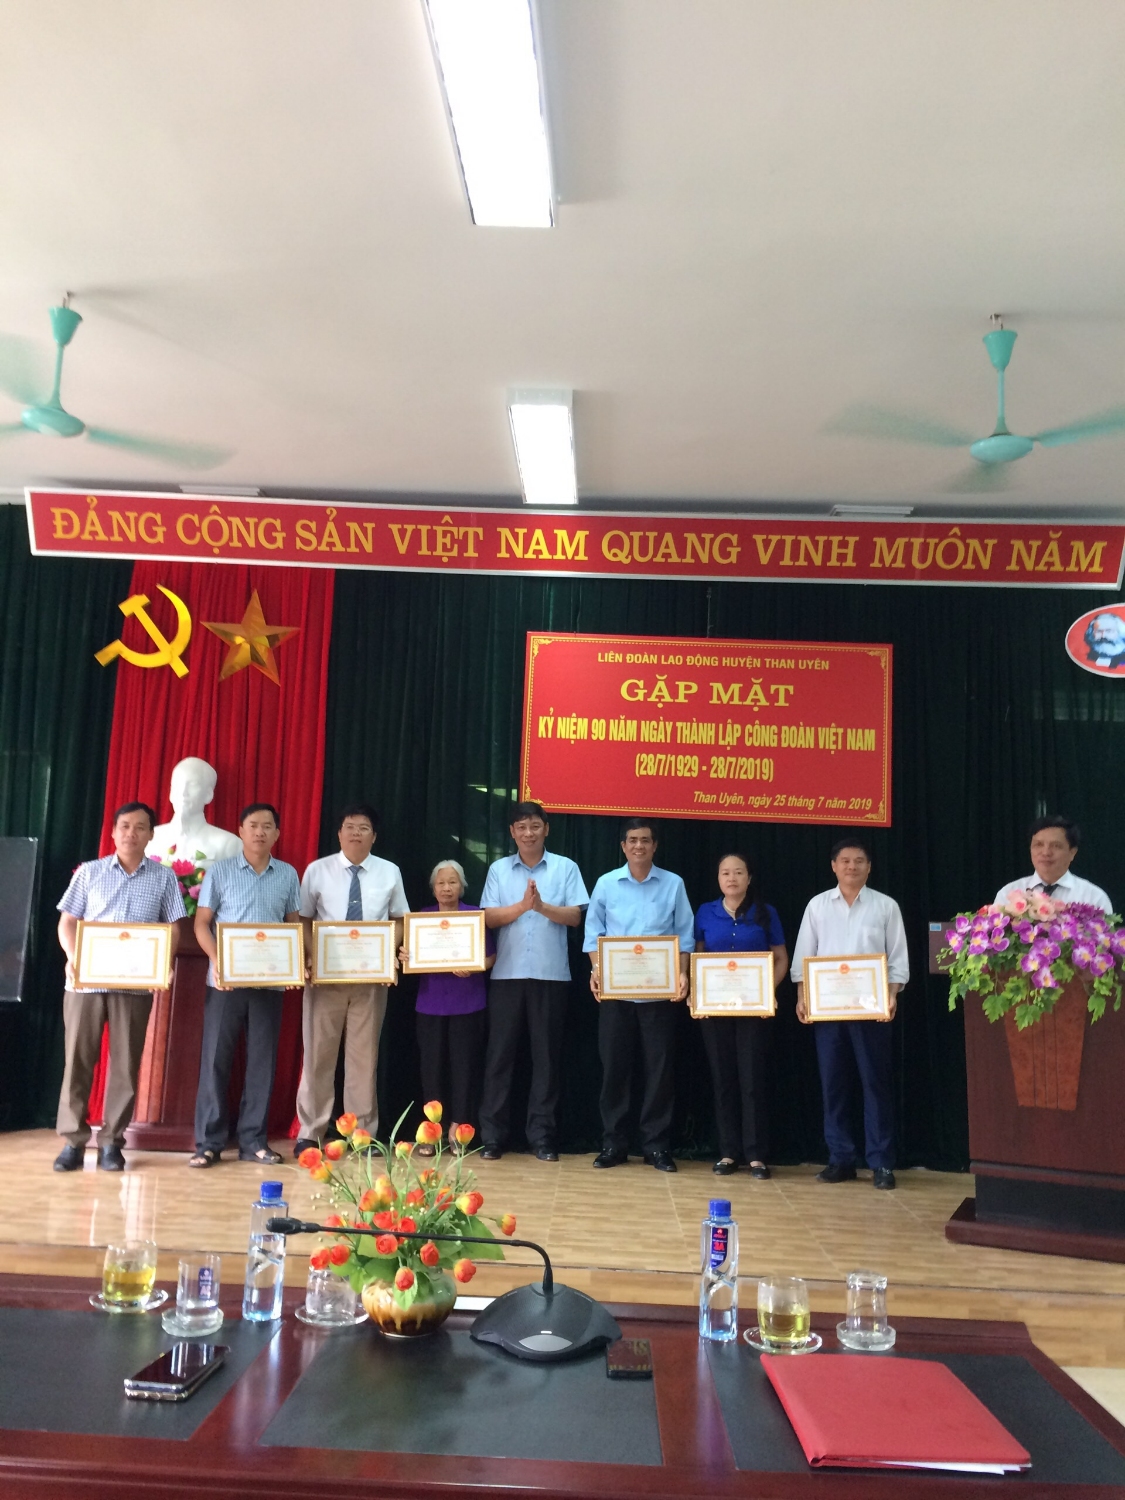 Đồng chí Hoàng Hữu An – Bí thư Huyện ủy trao giấy khen cho các cá nhân